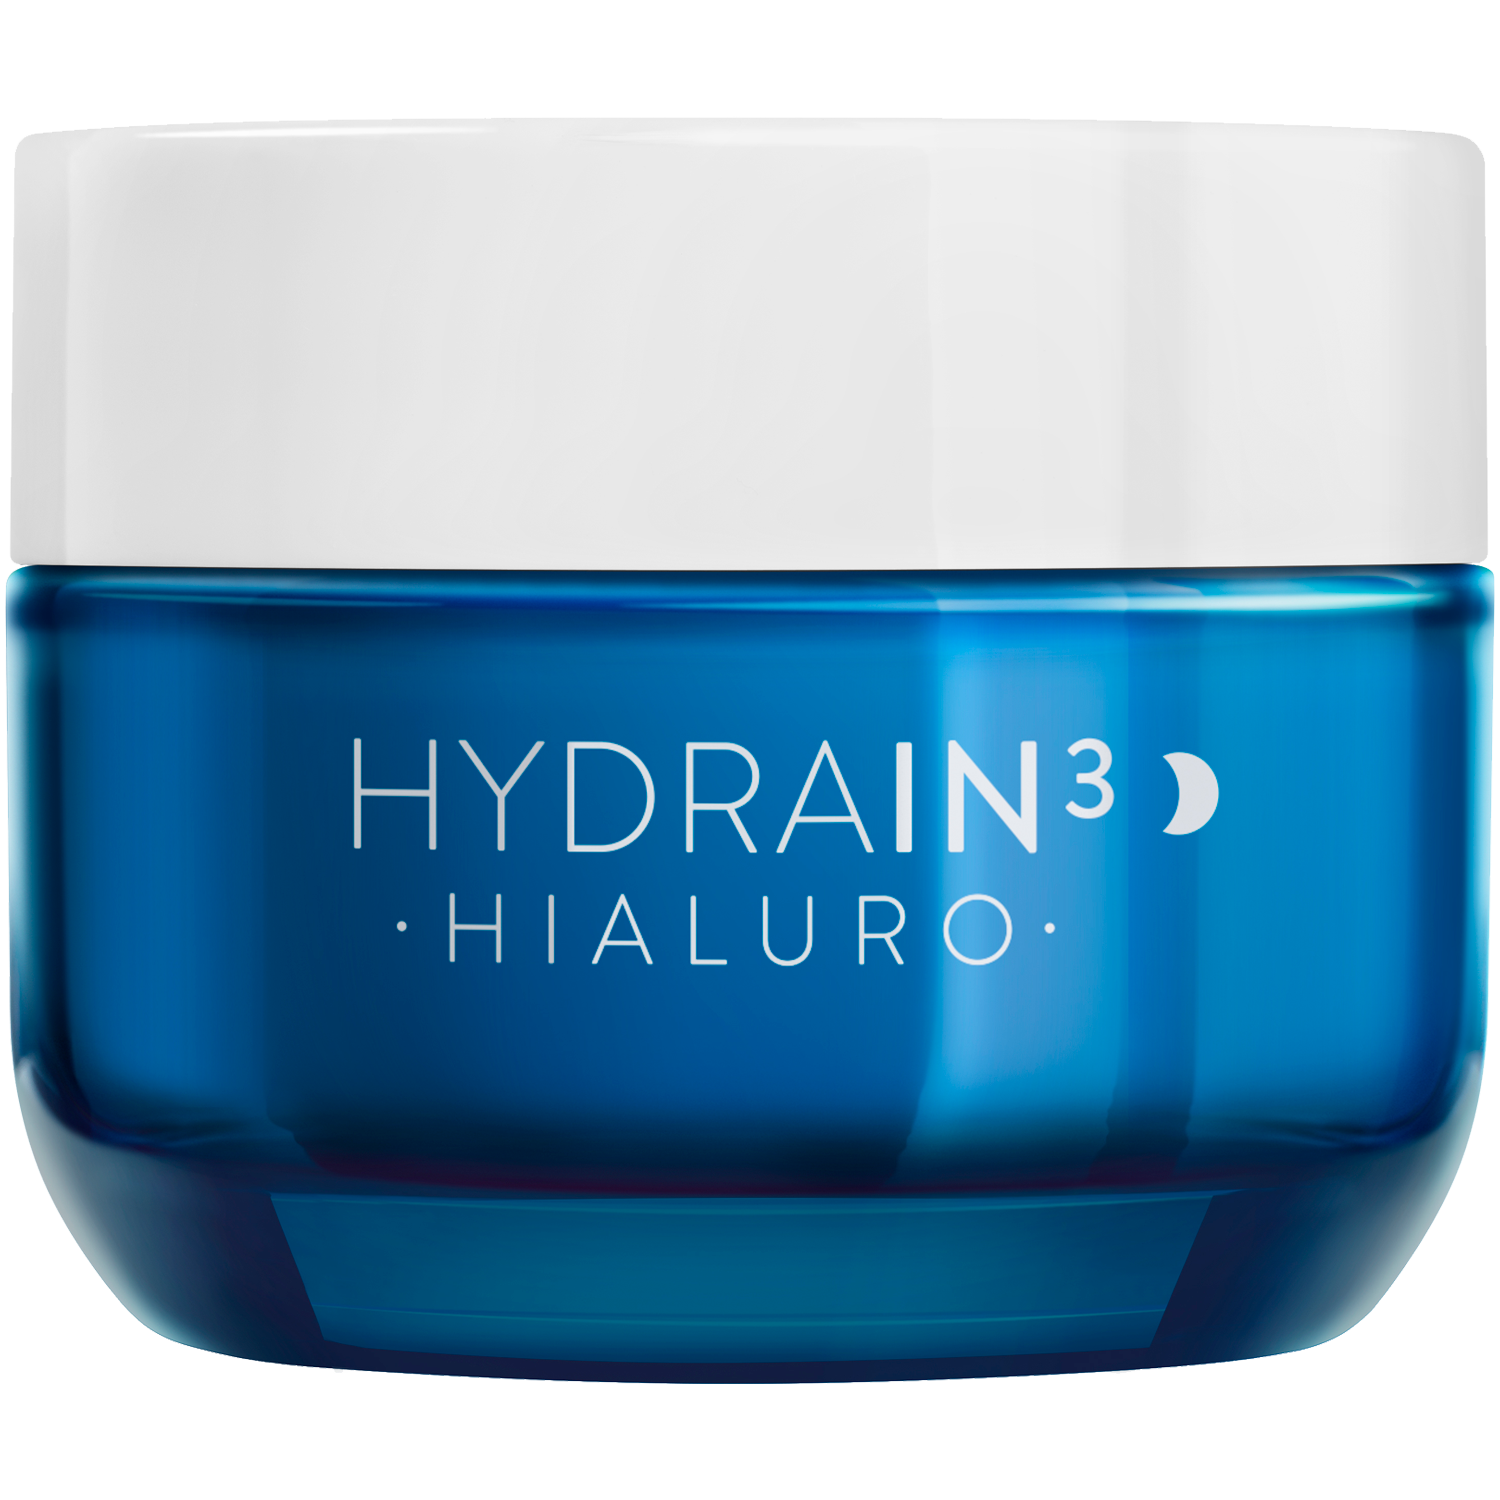 Dermedic Hydrain3 Hialuro крем для лица на ночь, 50 мл крем для лица dermedic hydrain3 50 мл